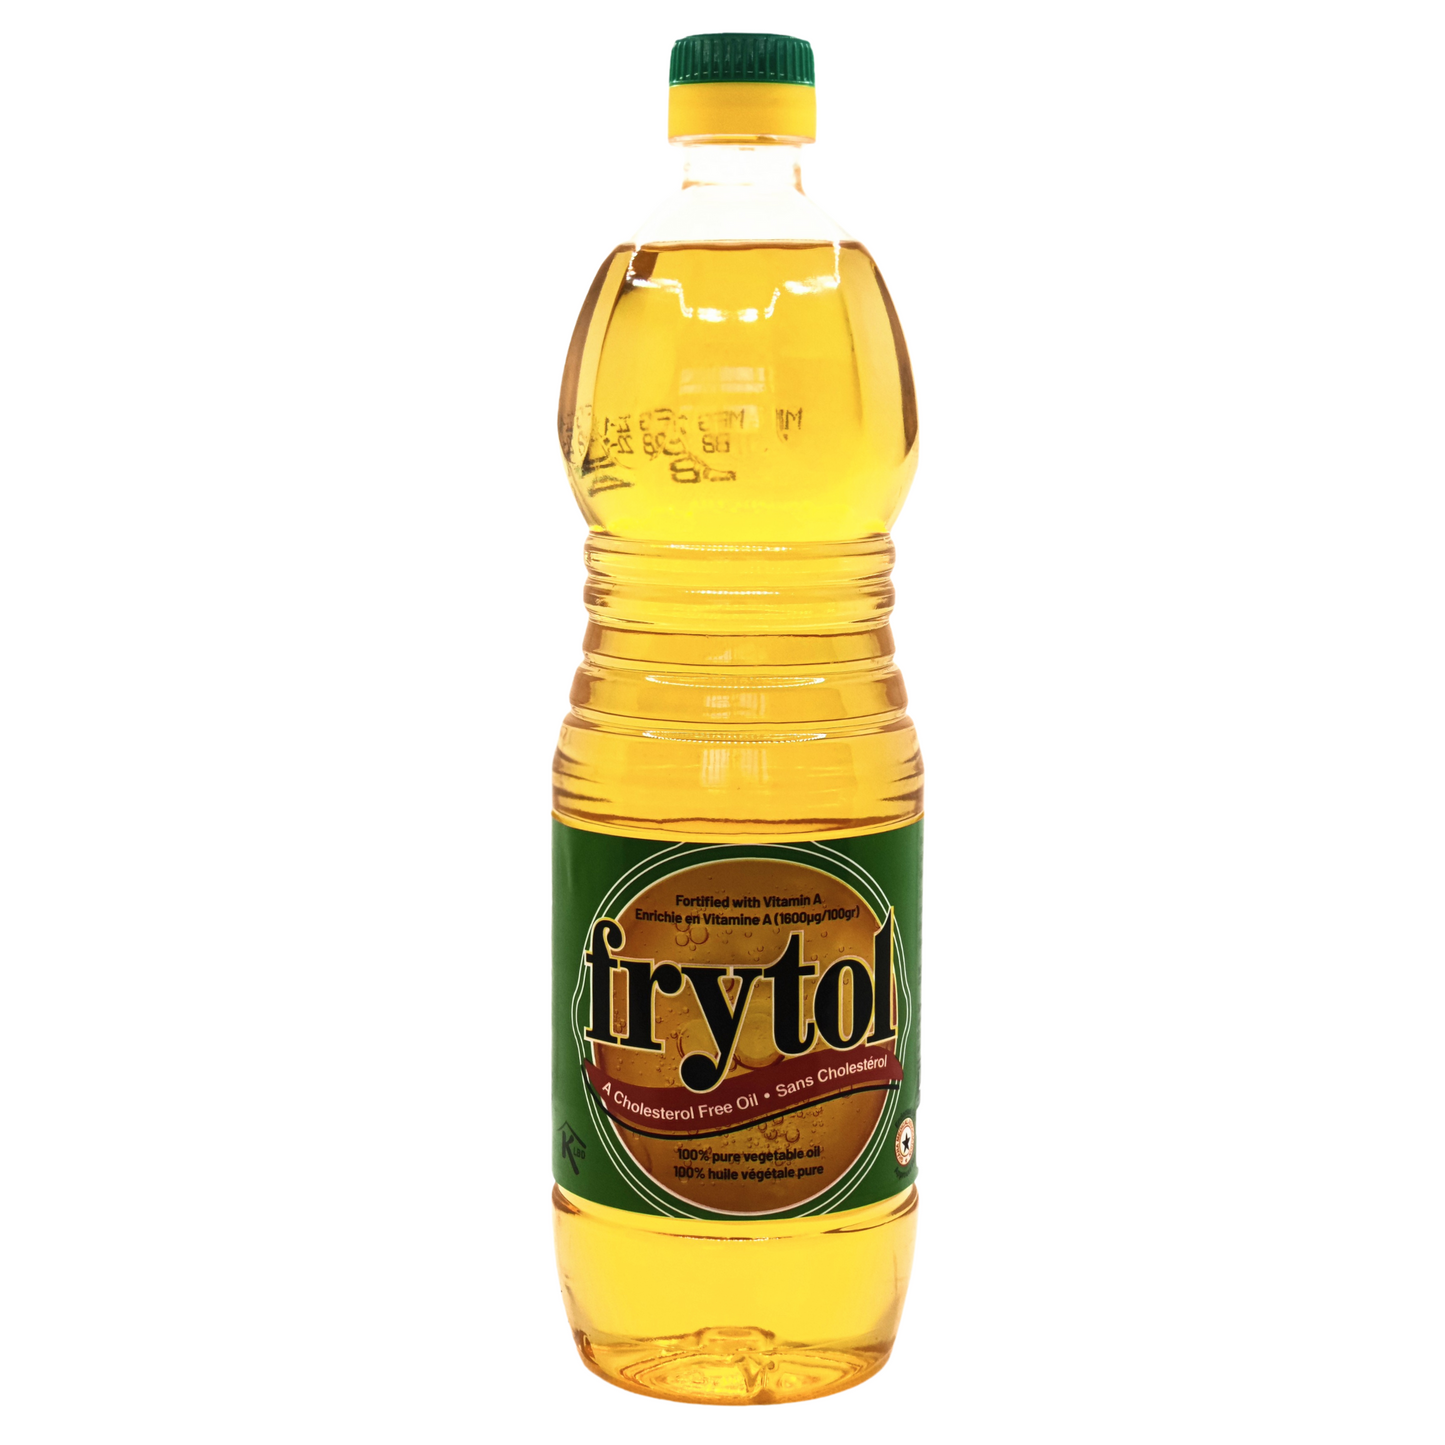 0.9 litre bottle of frytol vegetable cooking oil